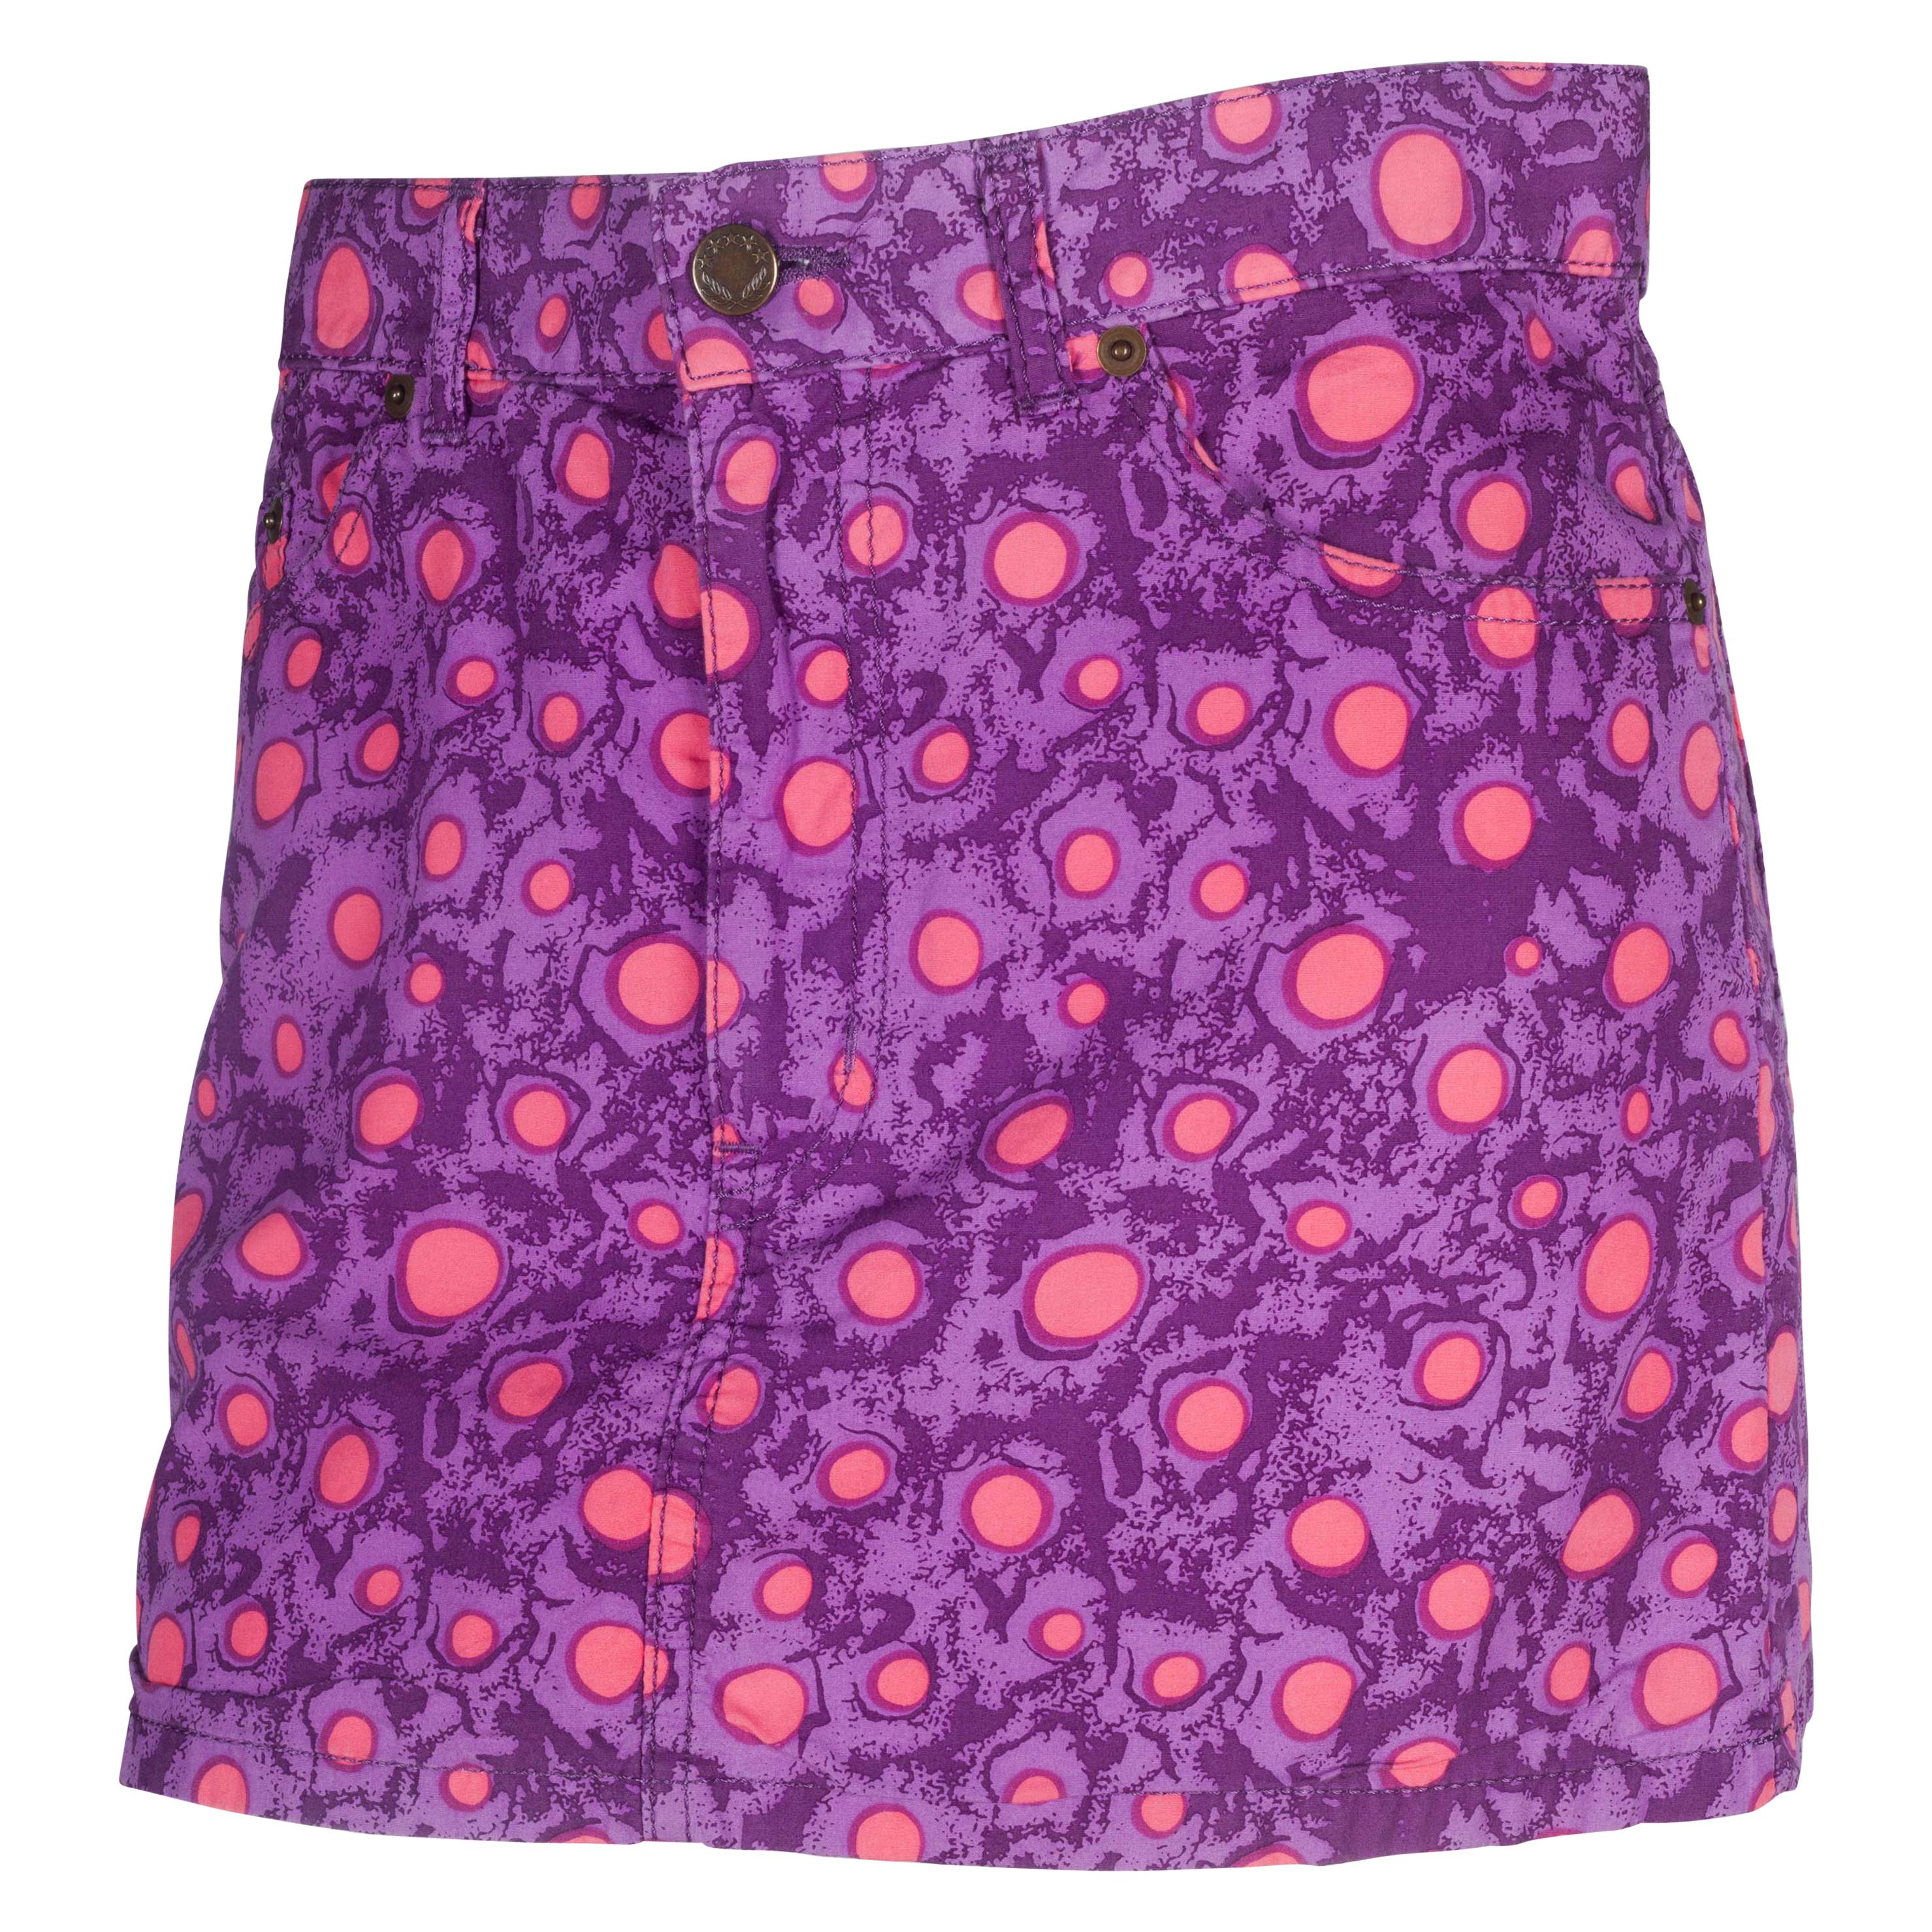 Comme des Garçons Tao Pink Purple Skirt, 2009